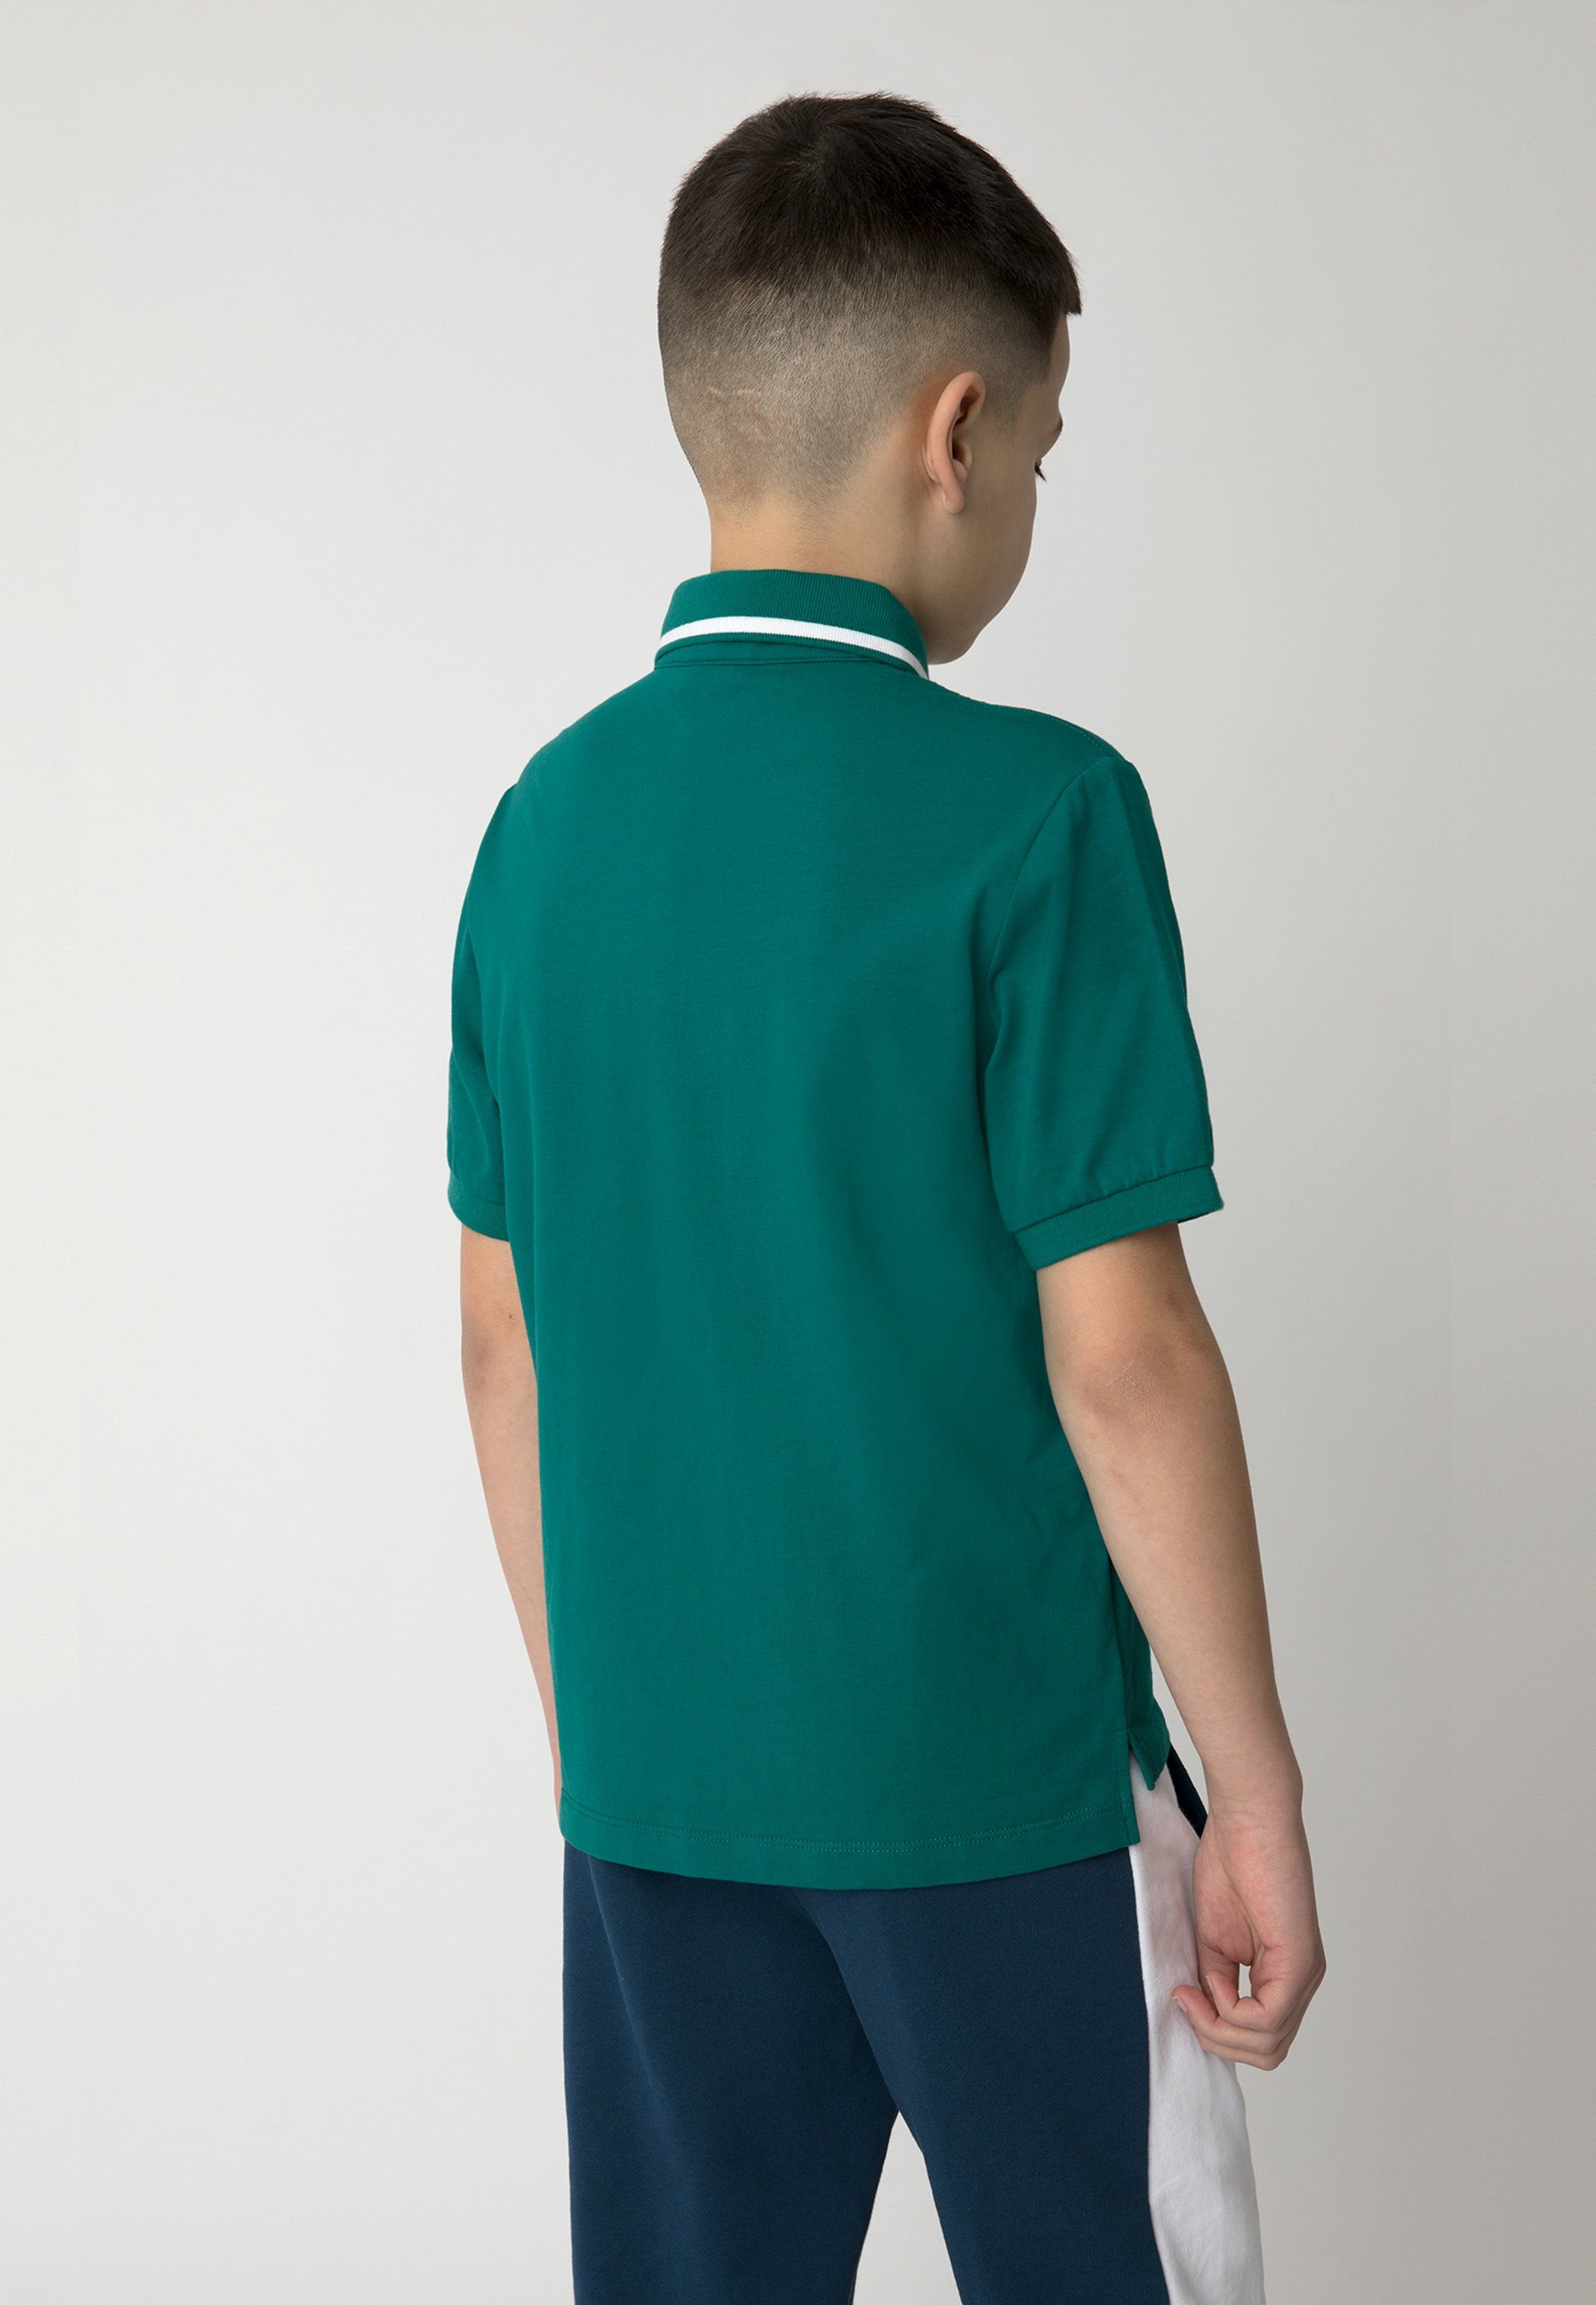 Aus Gulliver Baumwoll-Elasthan-Mix Frontprint, Poloshirt angenehmem gefertigt mit trendigem